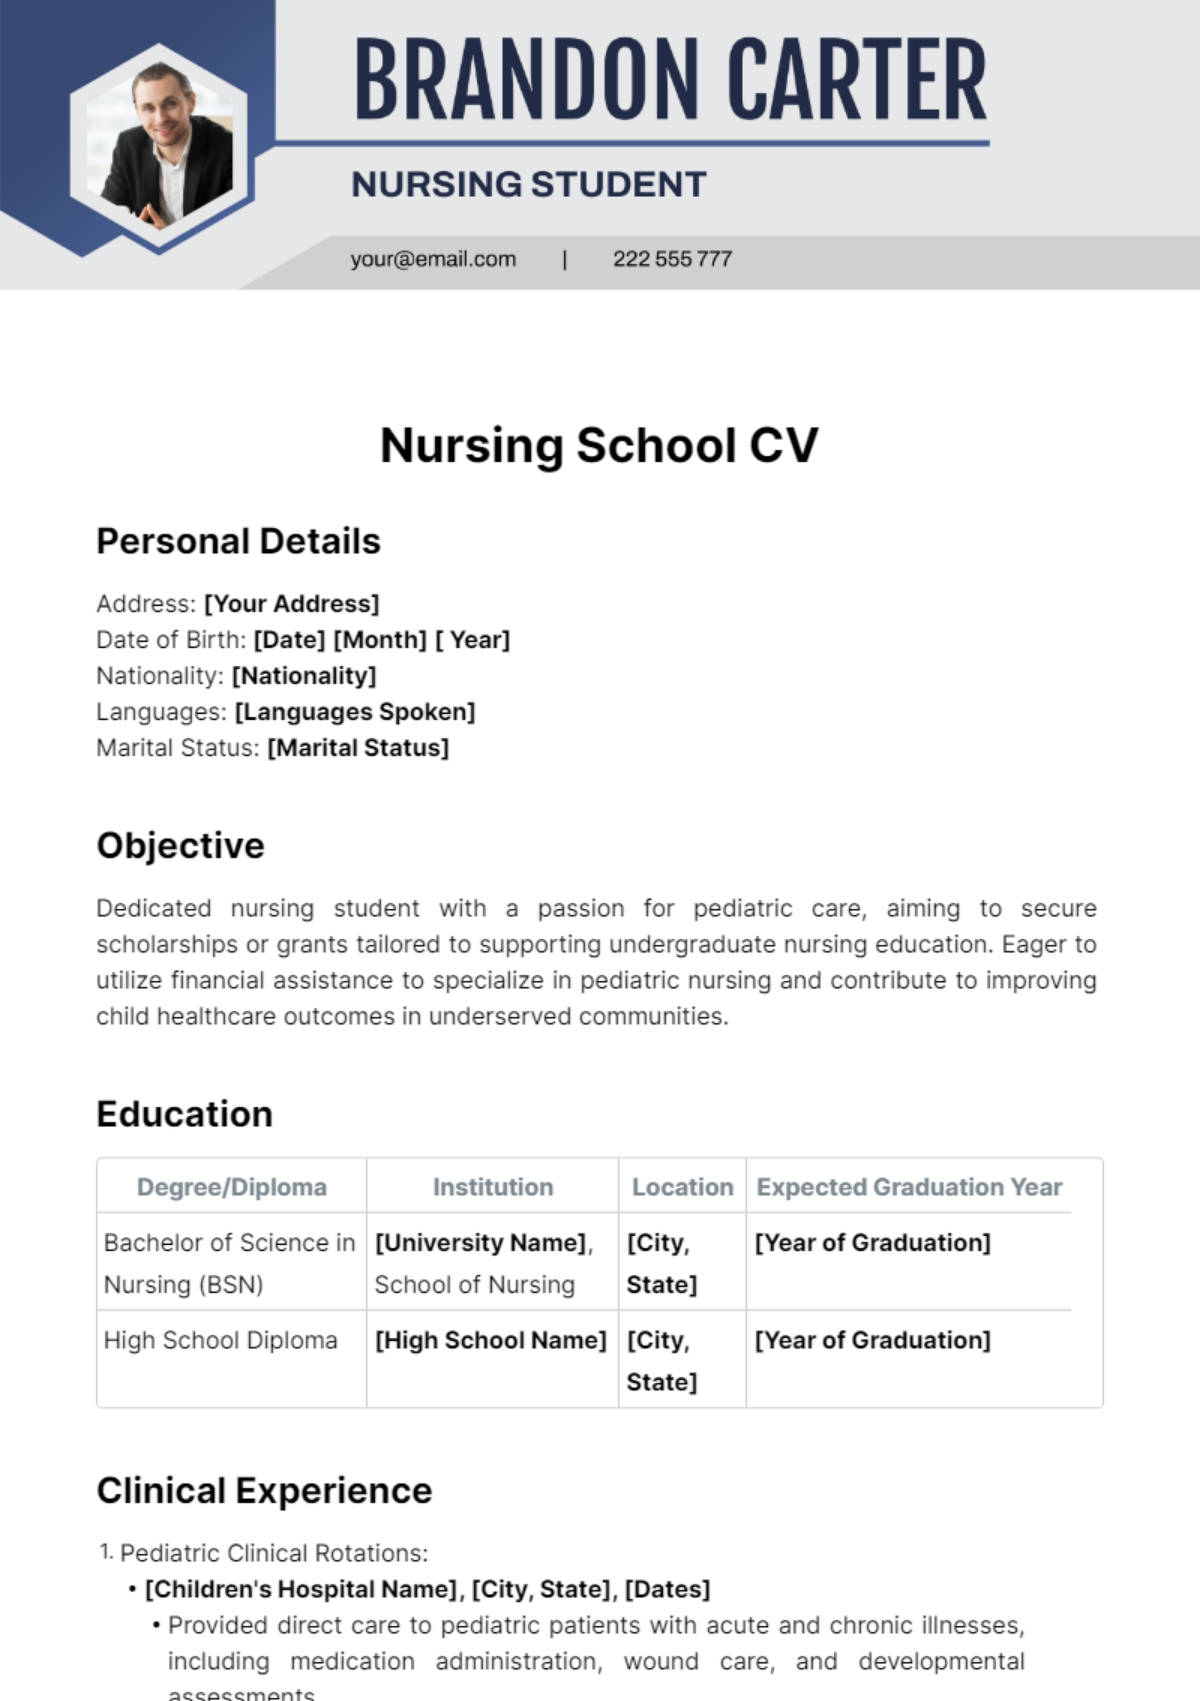 Nursing School CV Template